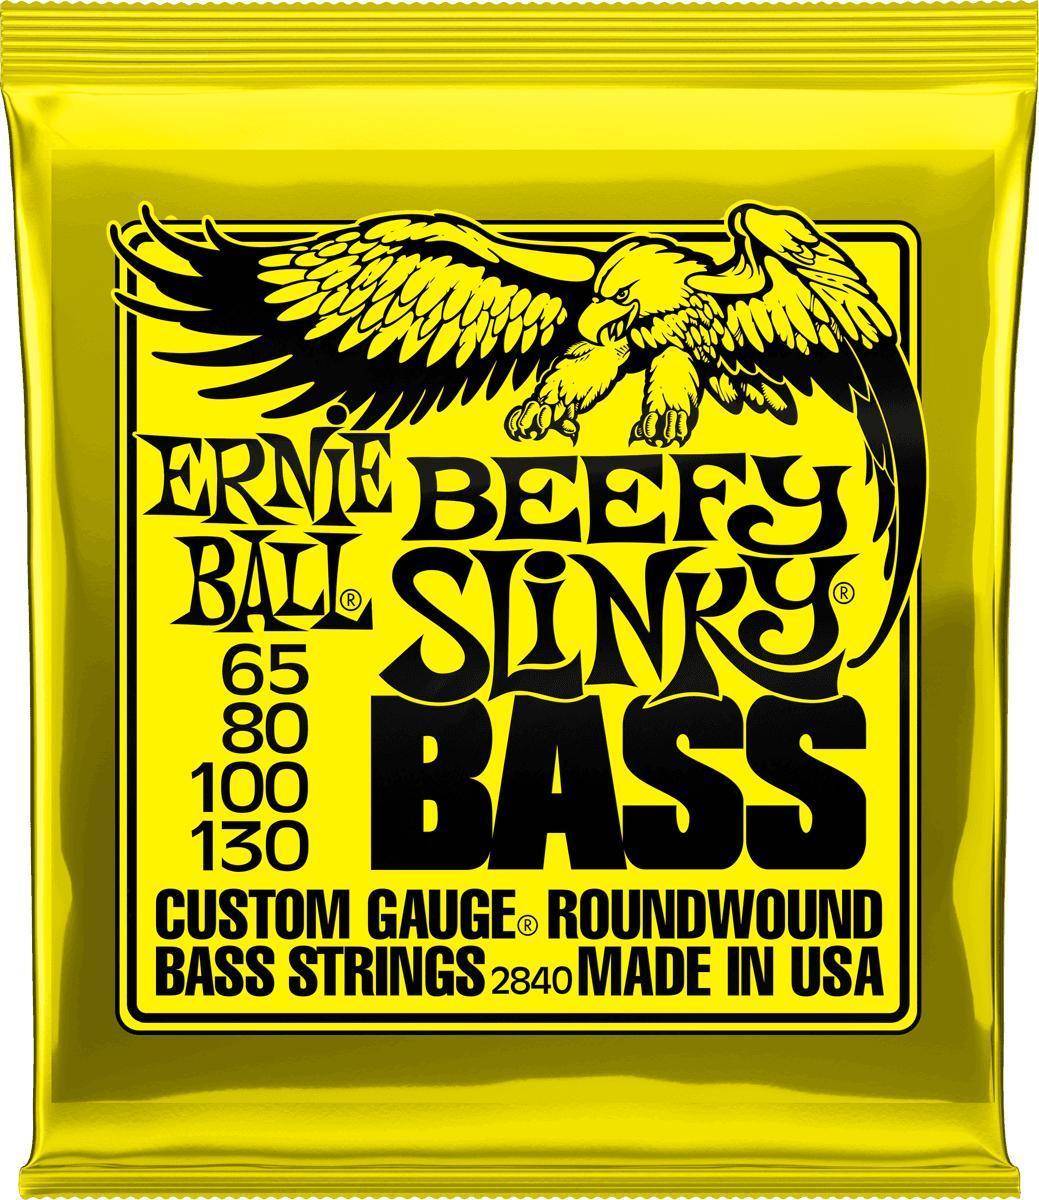 E-bass saiten Ernie ball Bass 2840 Beefy Slinky 65-130